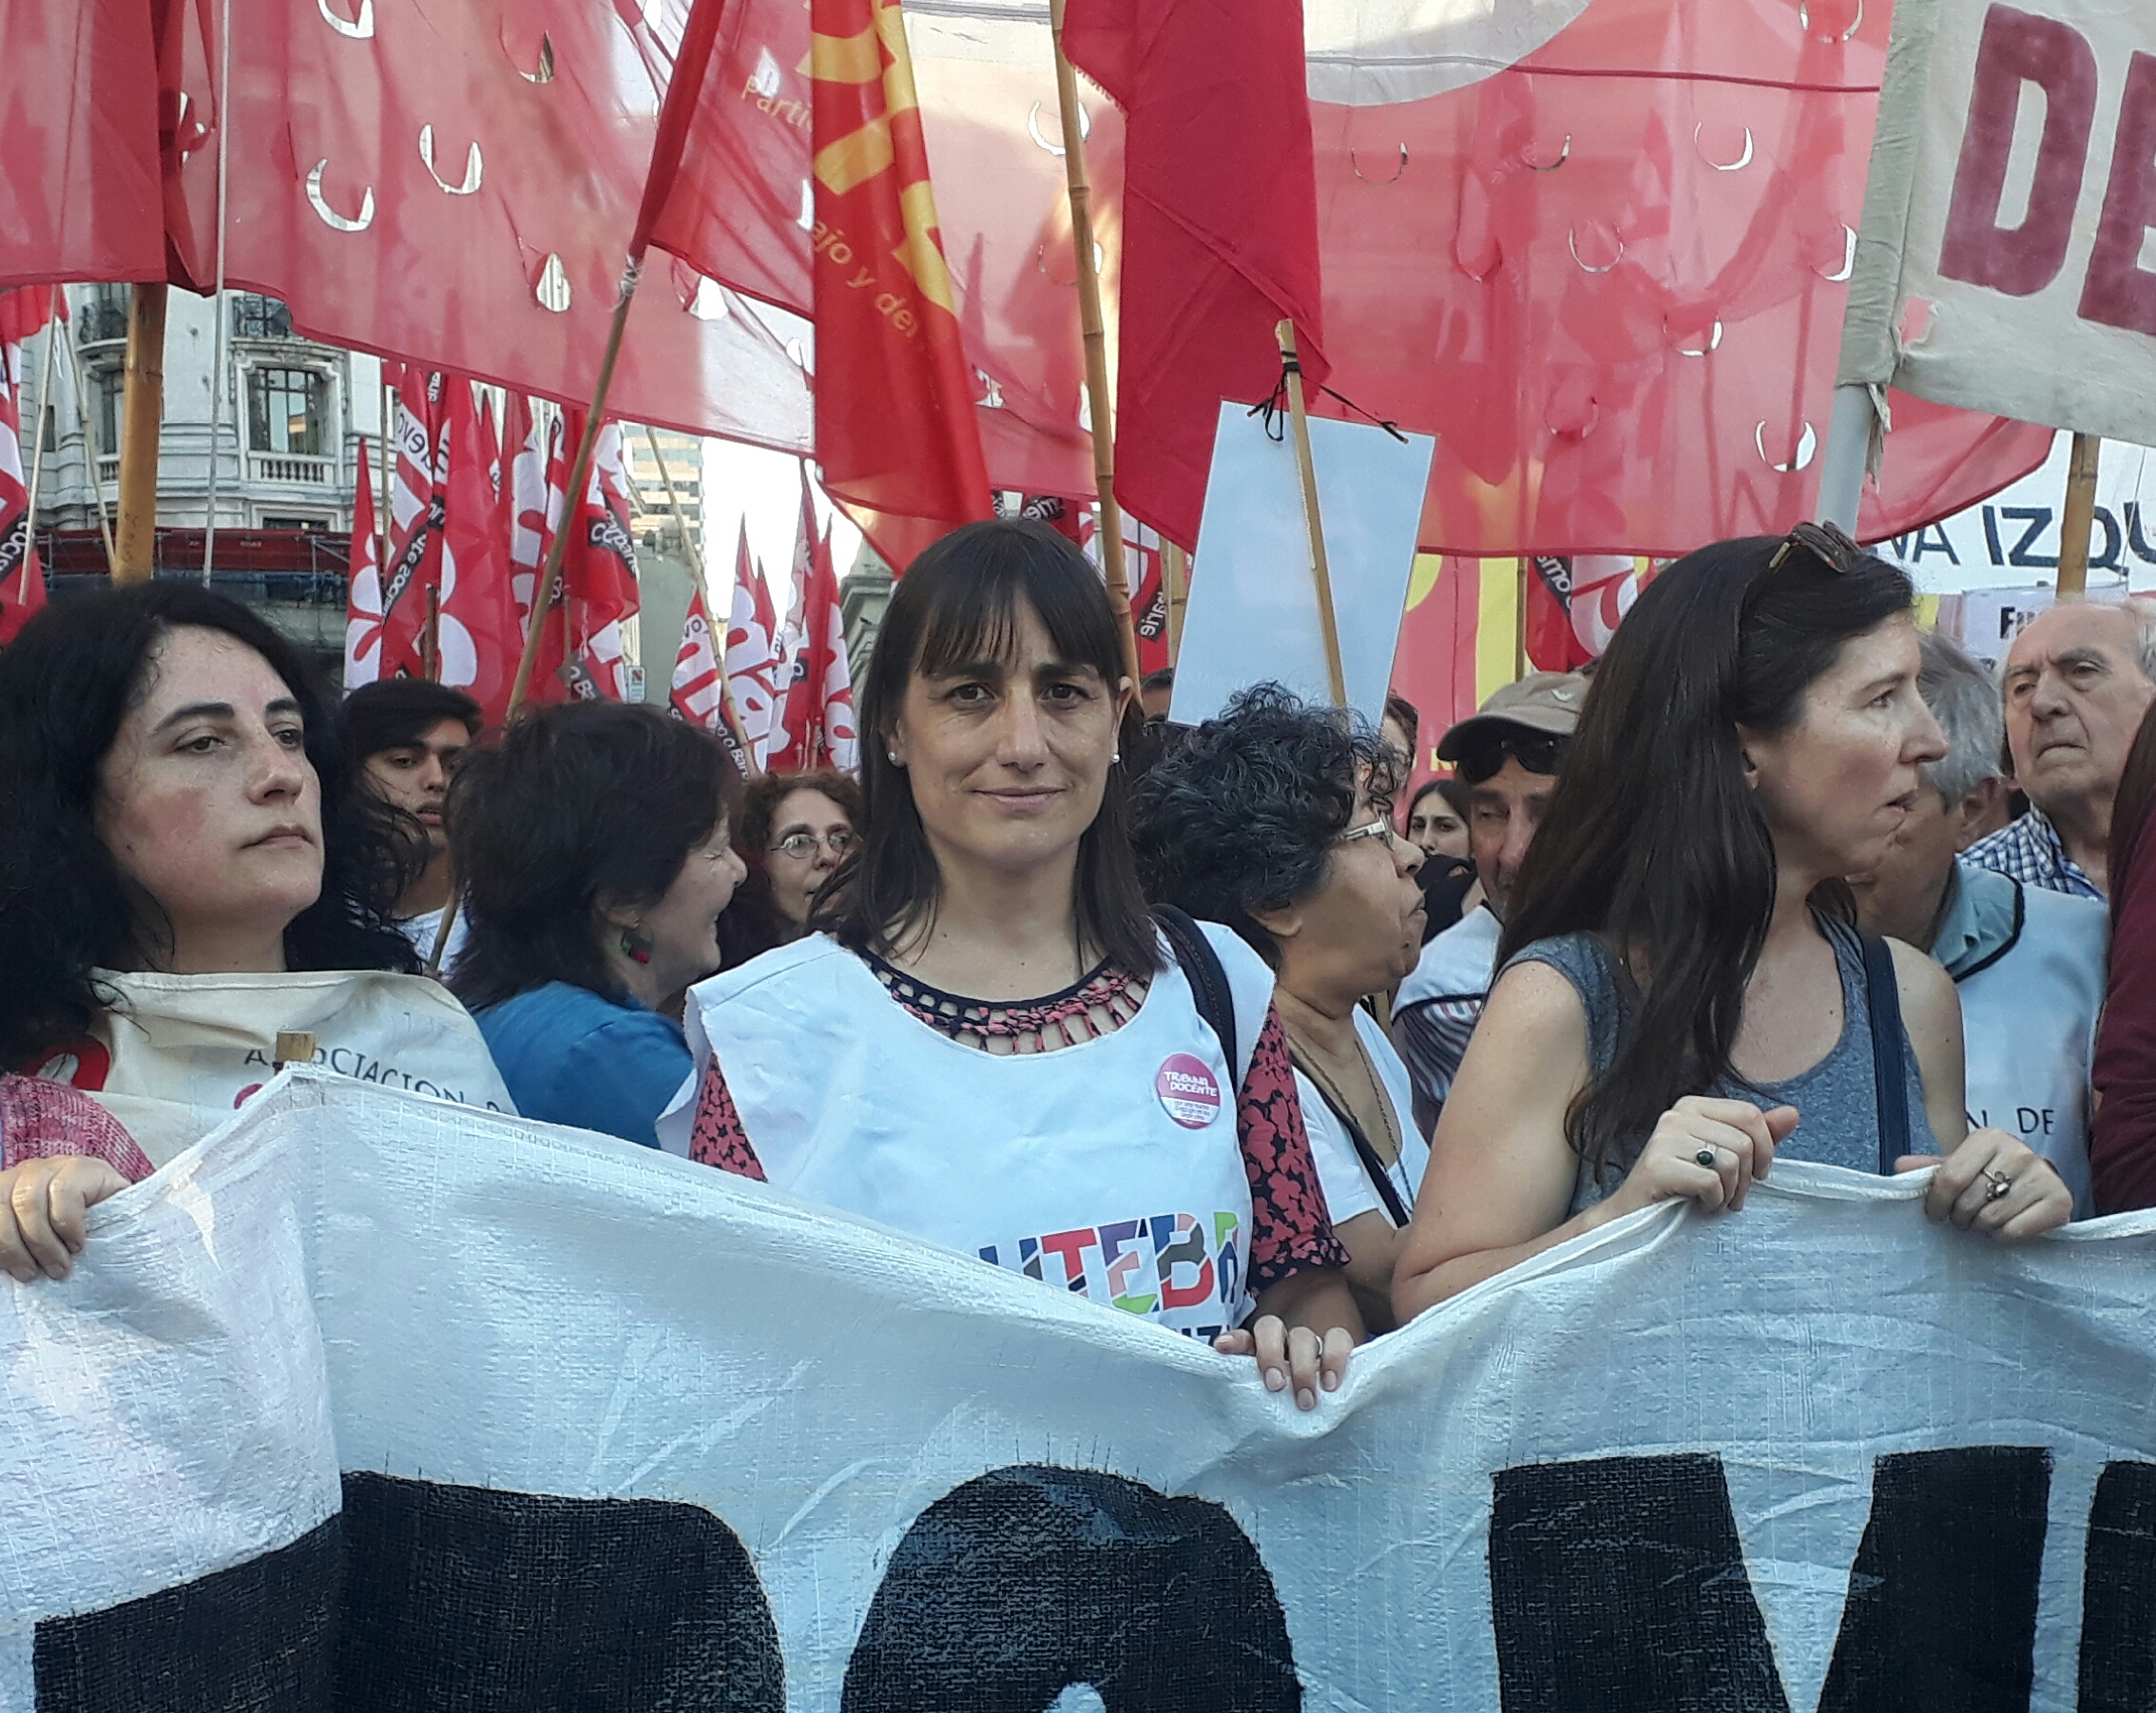 Romina Del Plá: “Movilizamos en una columna independiente por un plan de lucha hasta ganar”